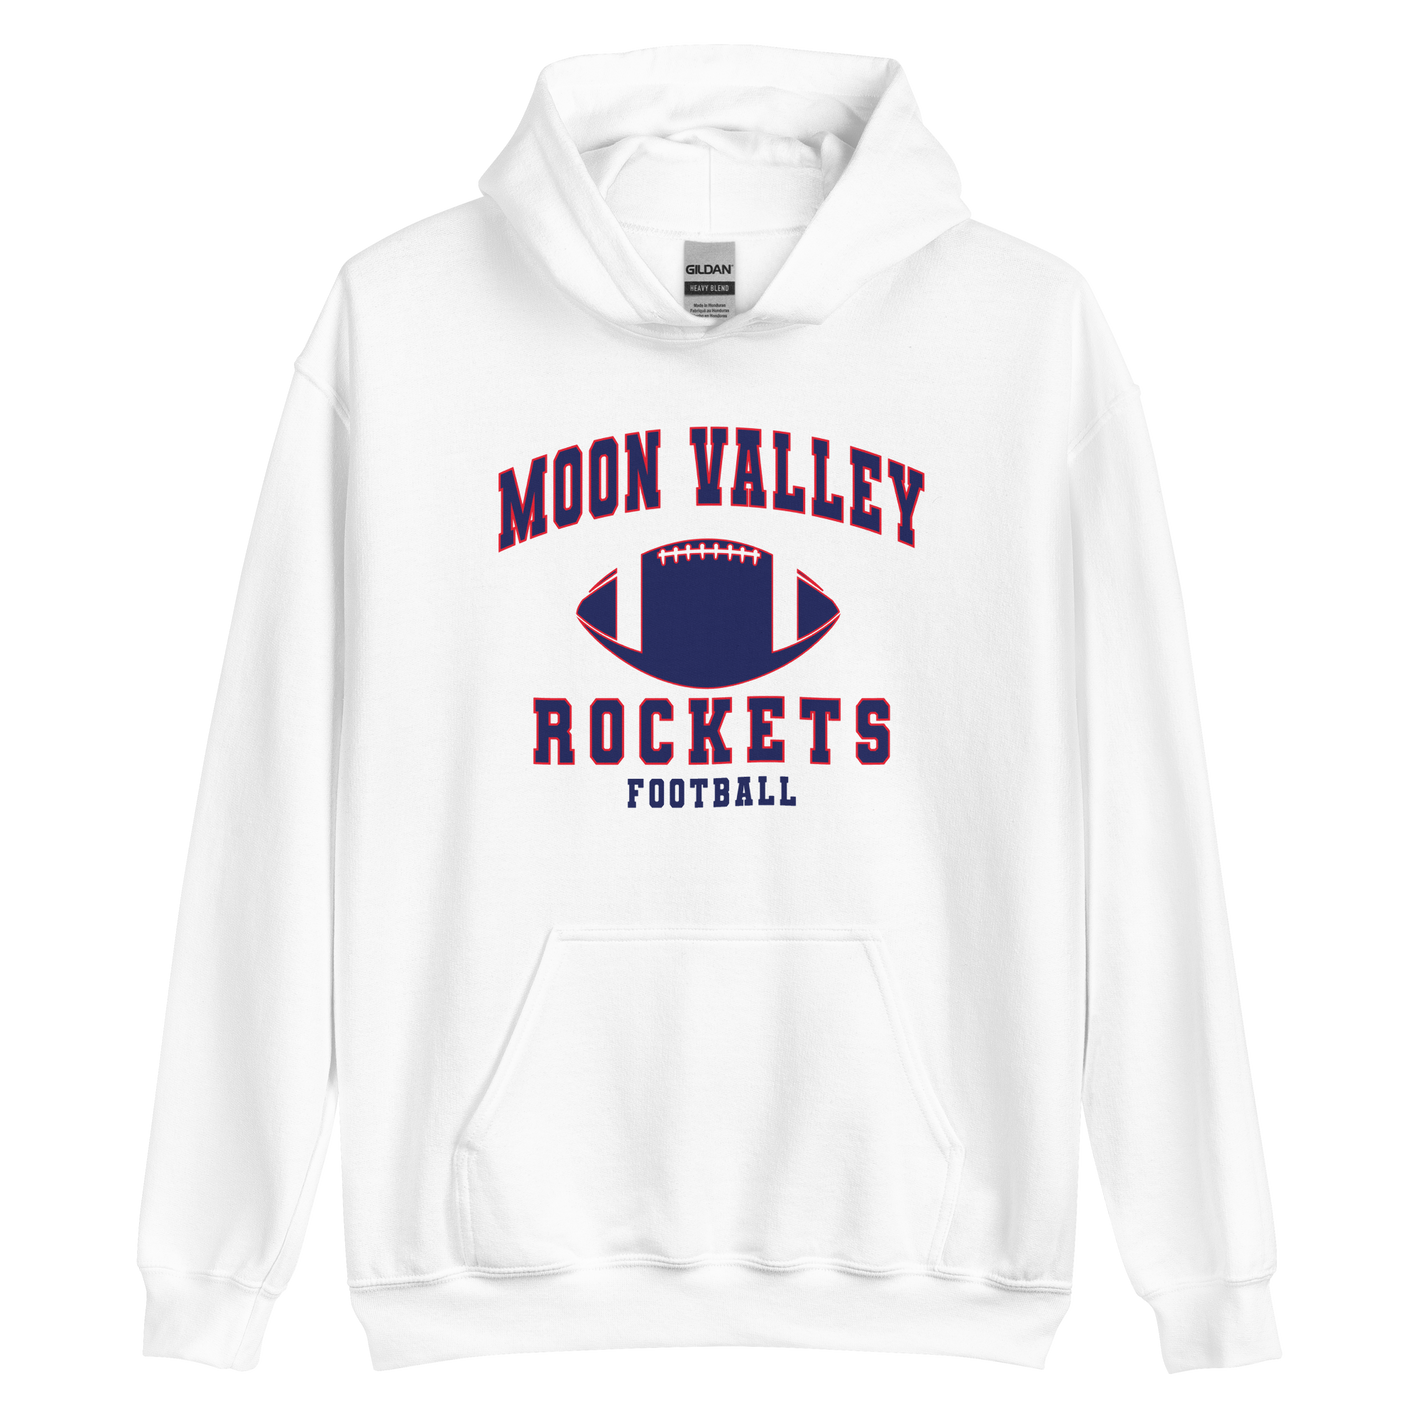 Moon valley Football Unisex Hoodie